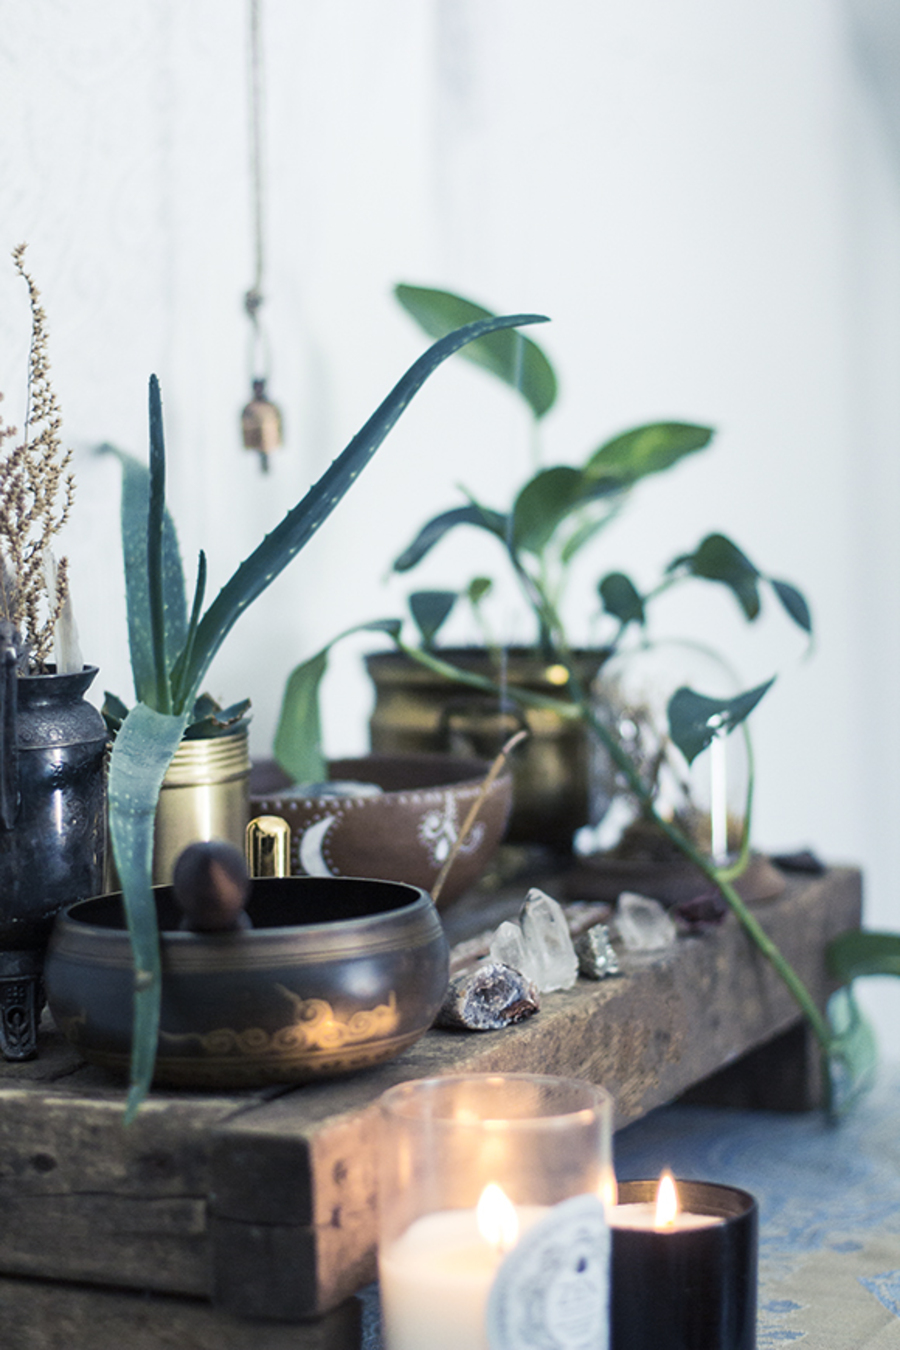 Plantas en un rincón junto a velas y elementos decorativos para un sector zen.